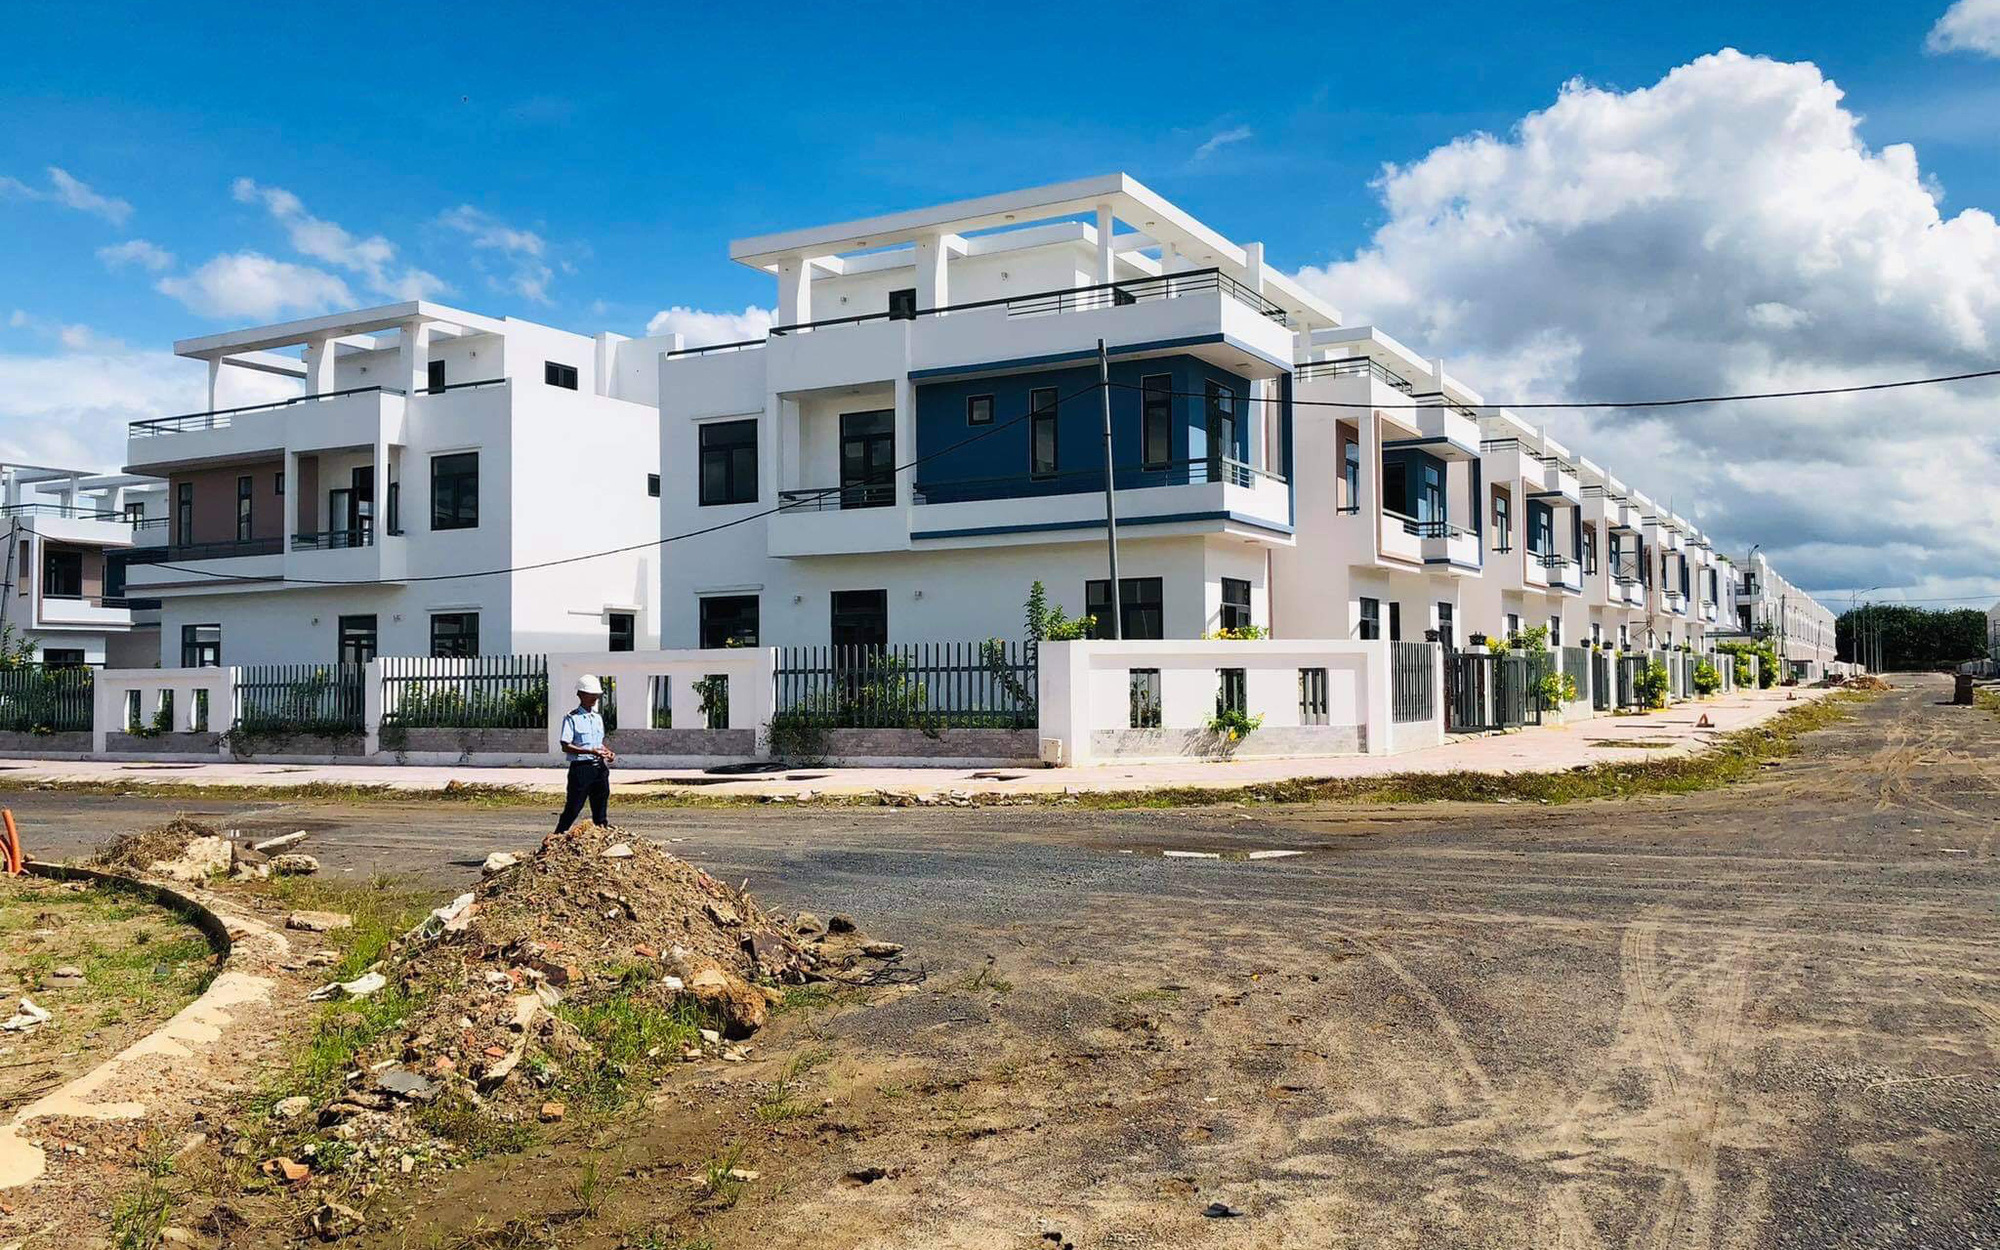 Đồng Nai: Thanh tra dự án “xây lén” 500 căn nhà trái phép ở huyện Trảng Bom